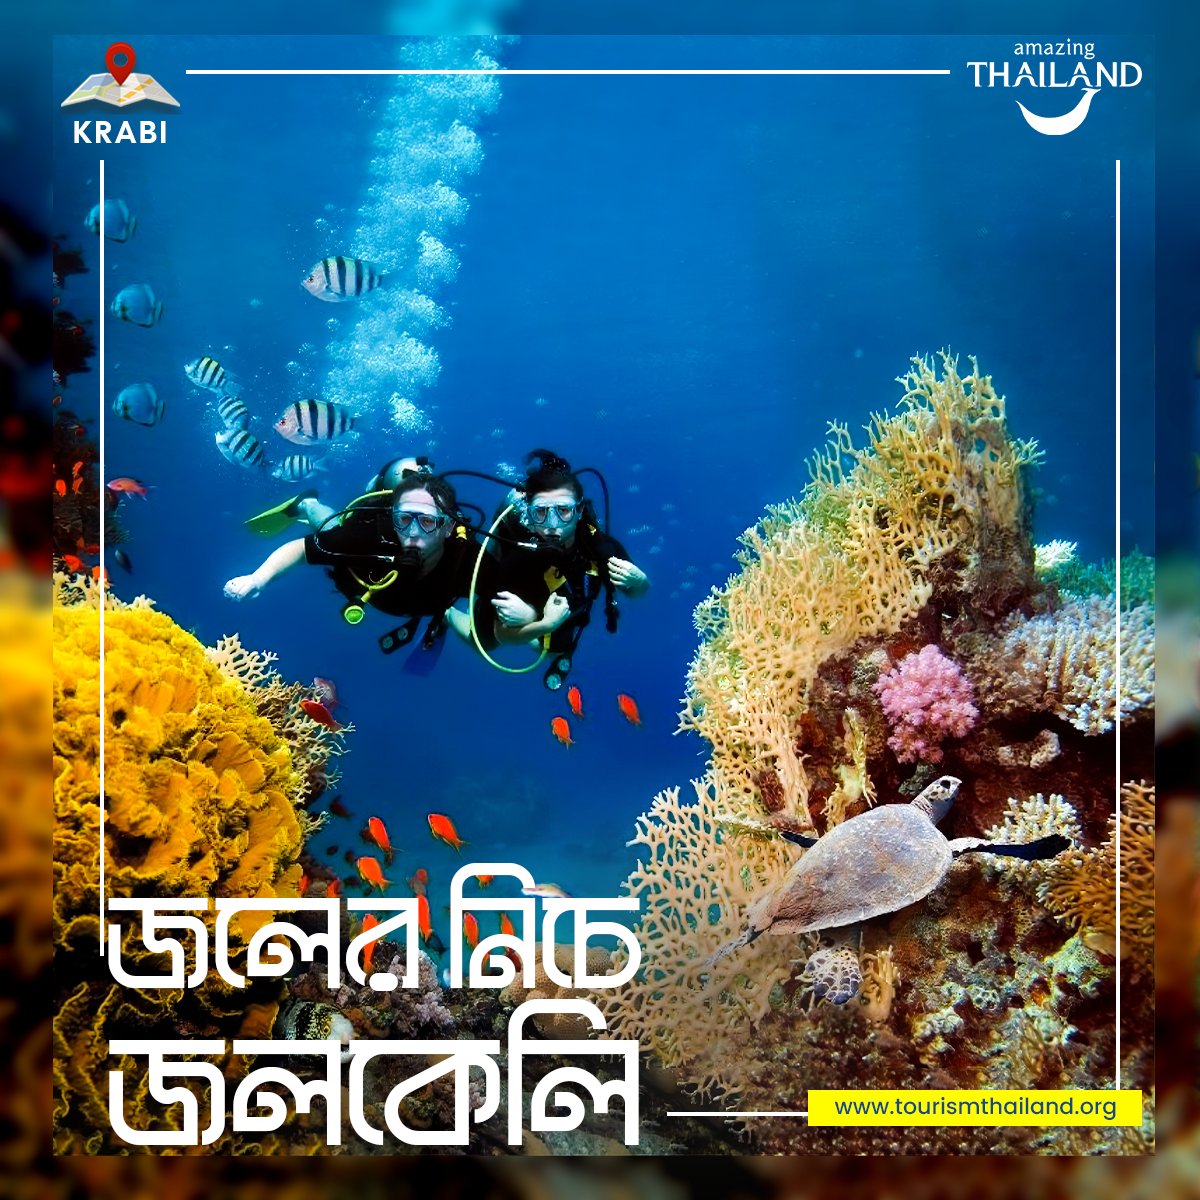 ক্রাবির সমুদ্রের তলায় নিজের সুবিধা মতো করুন ওয়াটার অ্যাডভেঞ্চার।
#krabi #Thailand #tatbangladesh #wateractivities #scubadiving #snorkeling #diving #deepseadiving🏊